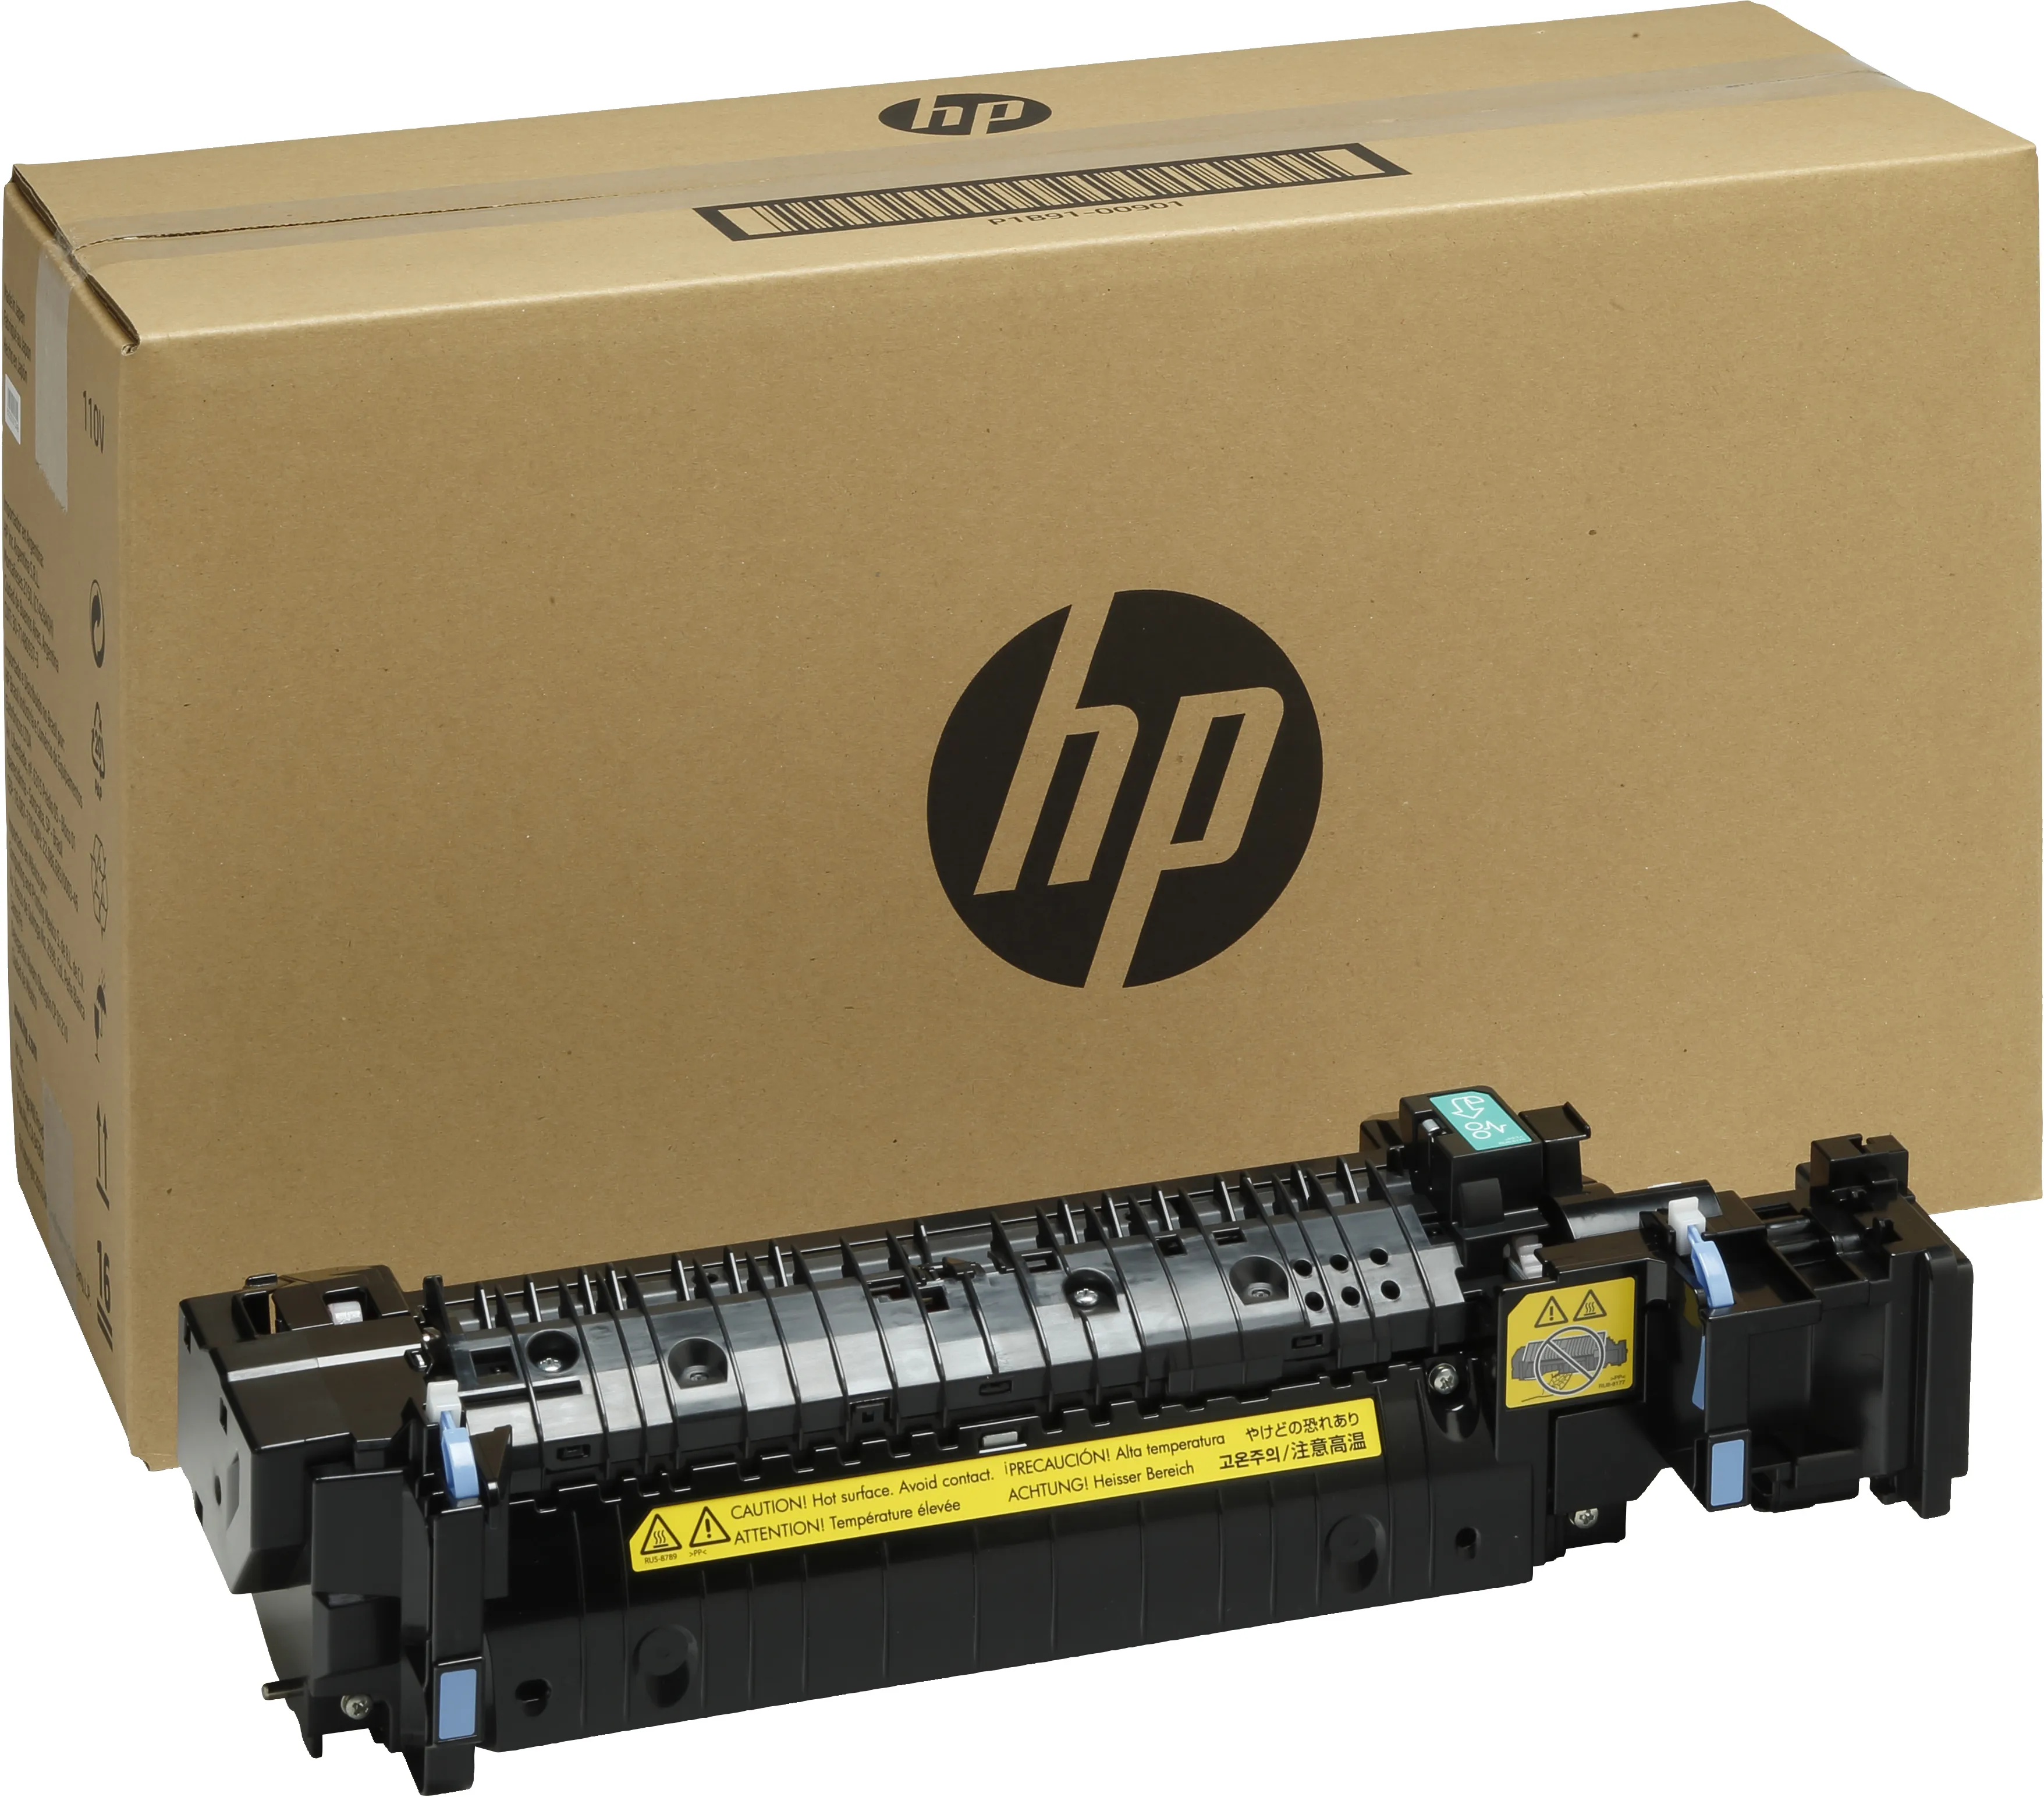 Vente HP LaserJet 220V Maintenance Kit HP au meilleur prix - visuel 10